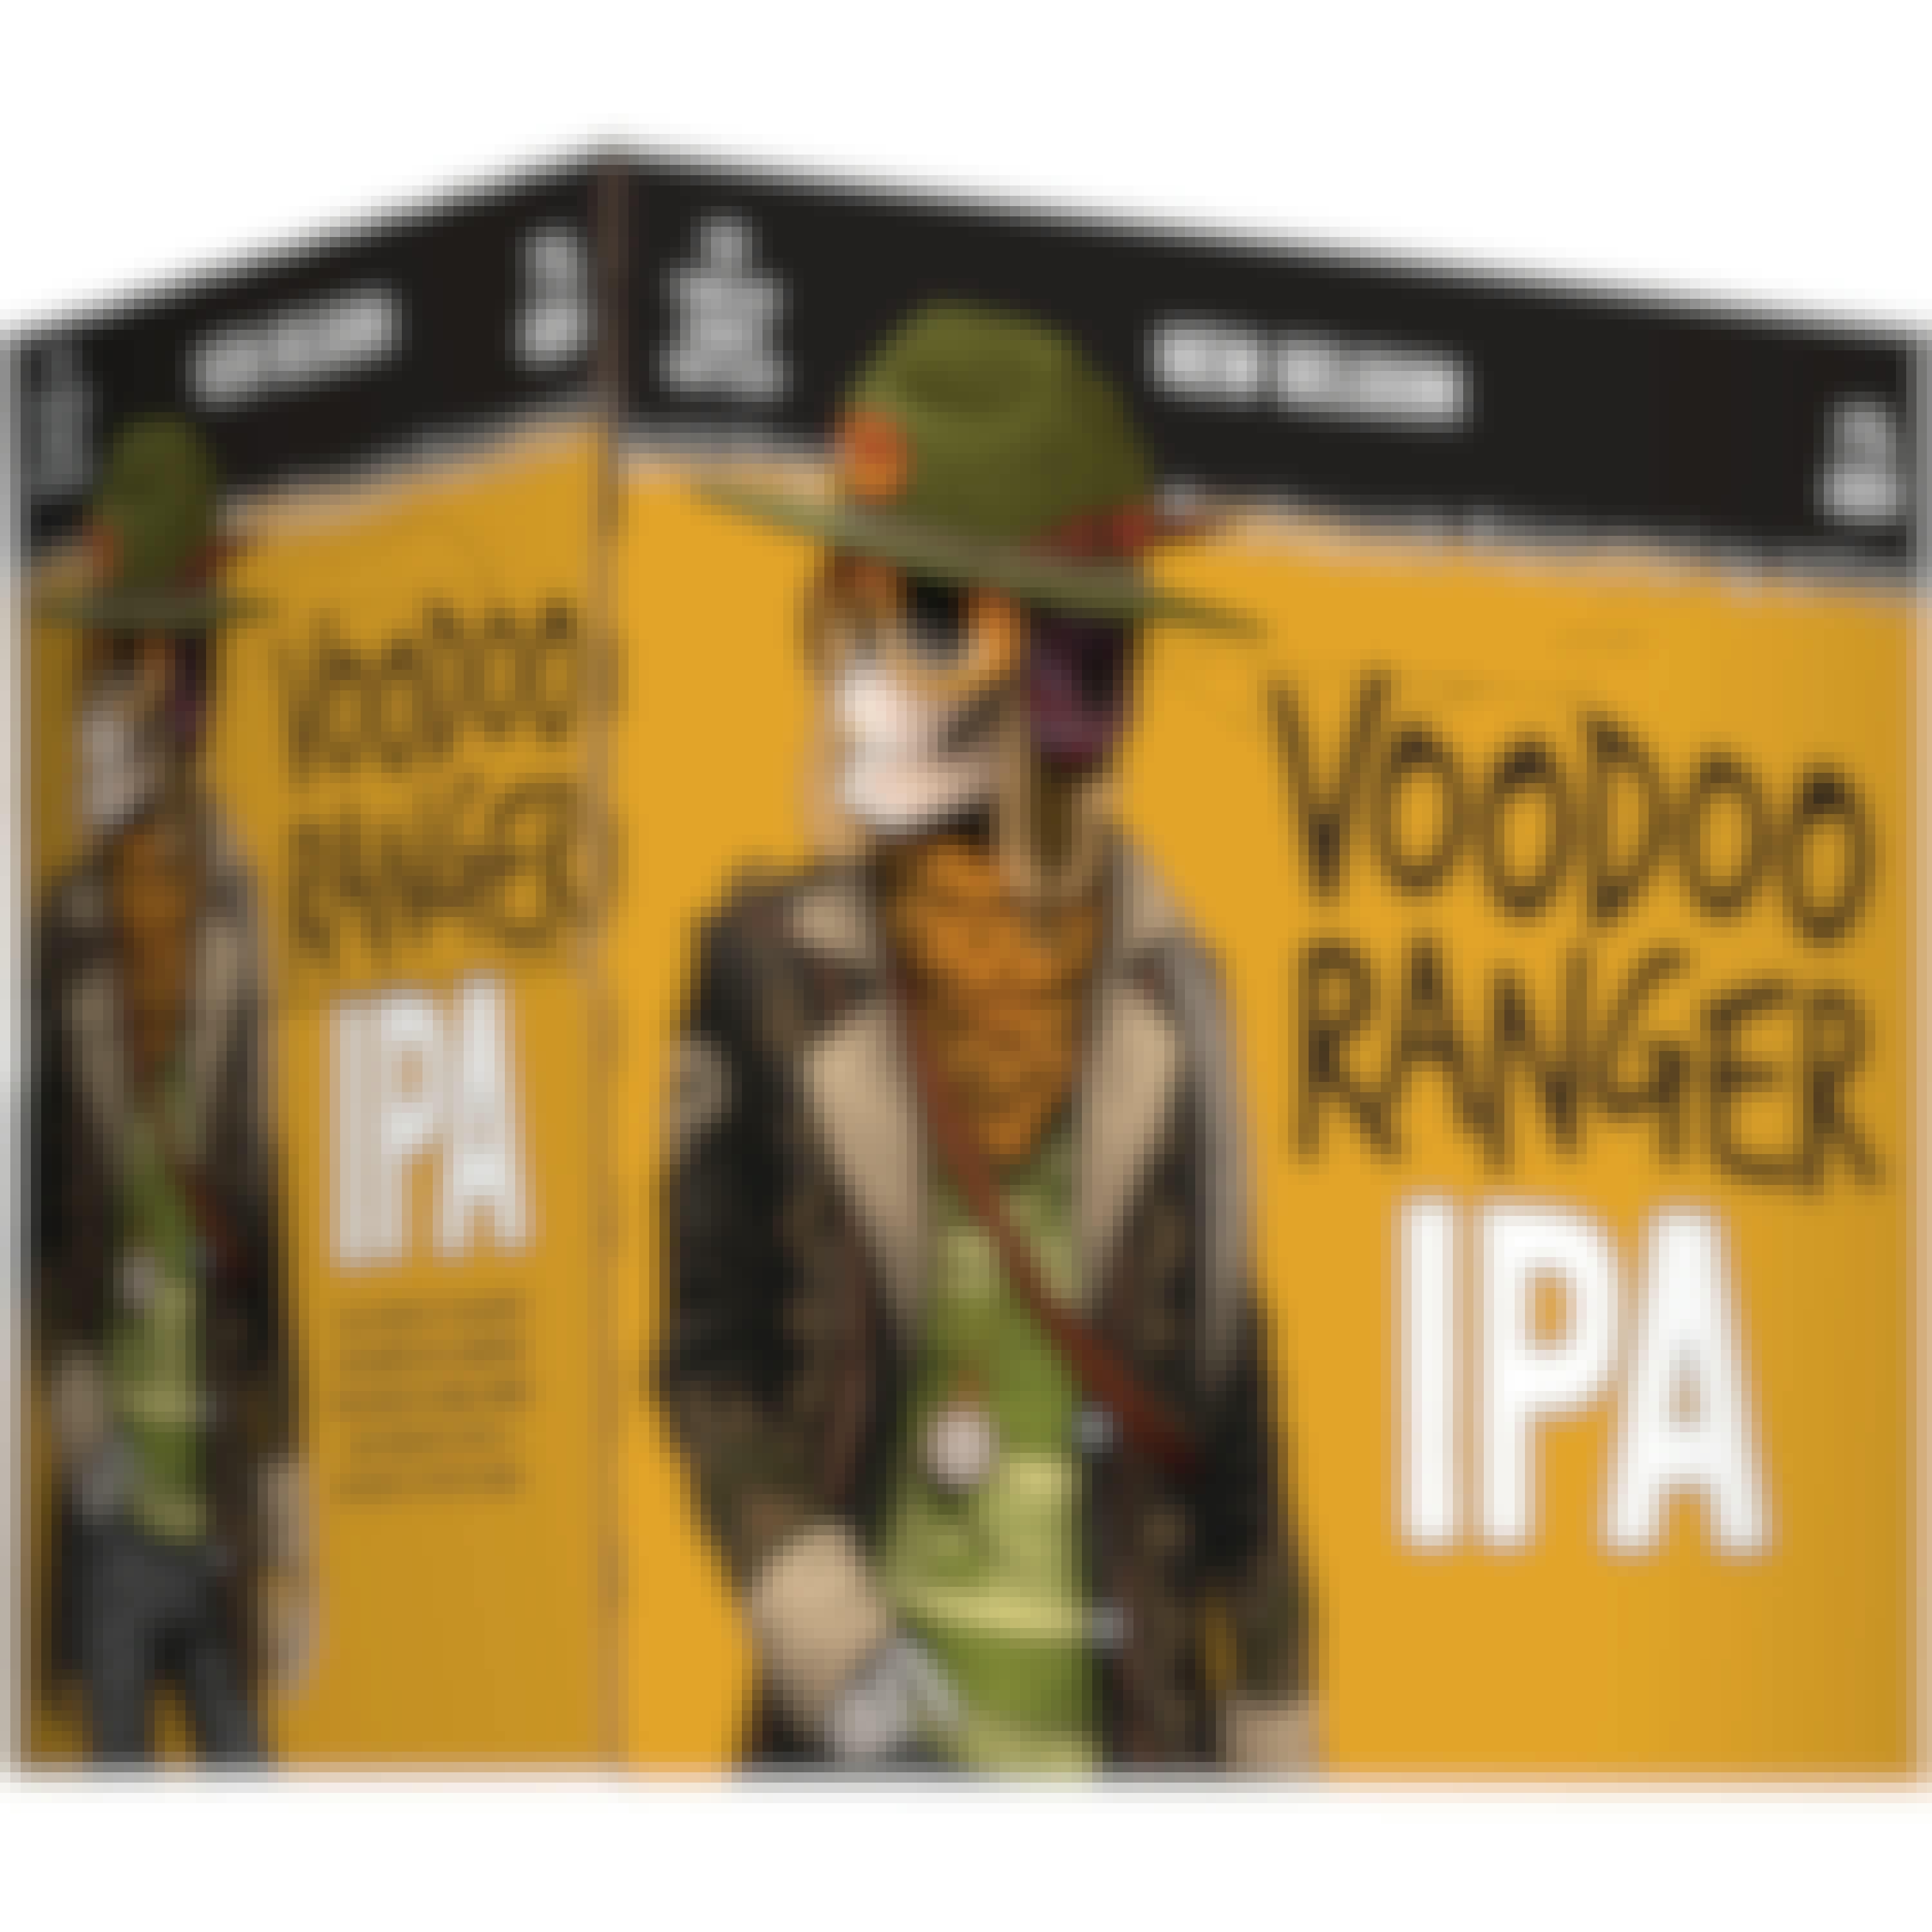 New Belgium Voodoo Ranger IPA 12 pack 12 oz. Bottle